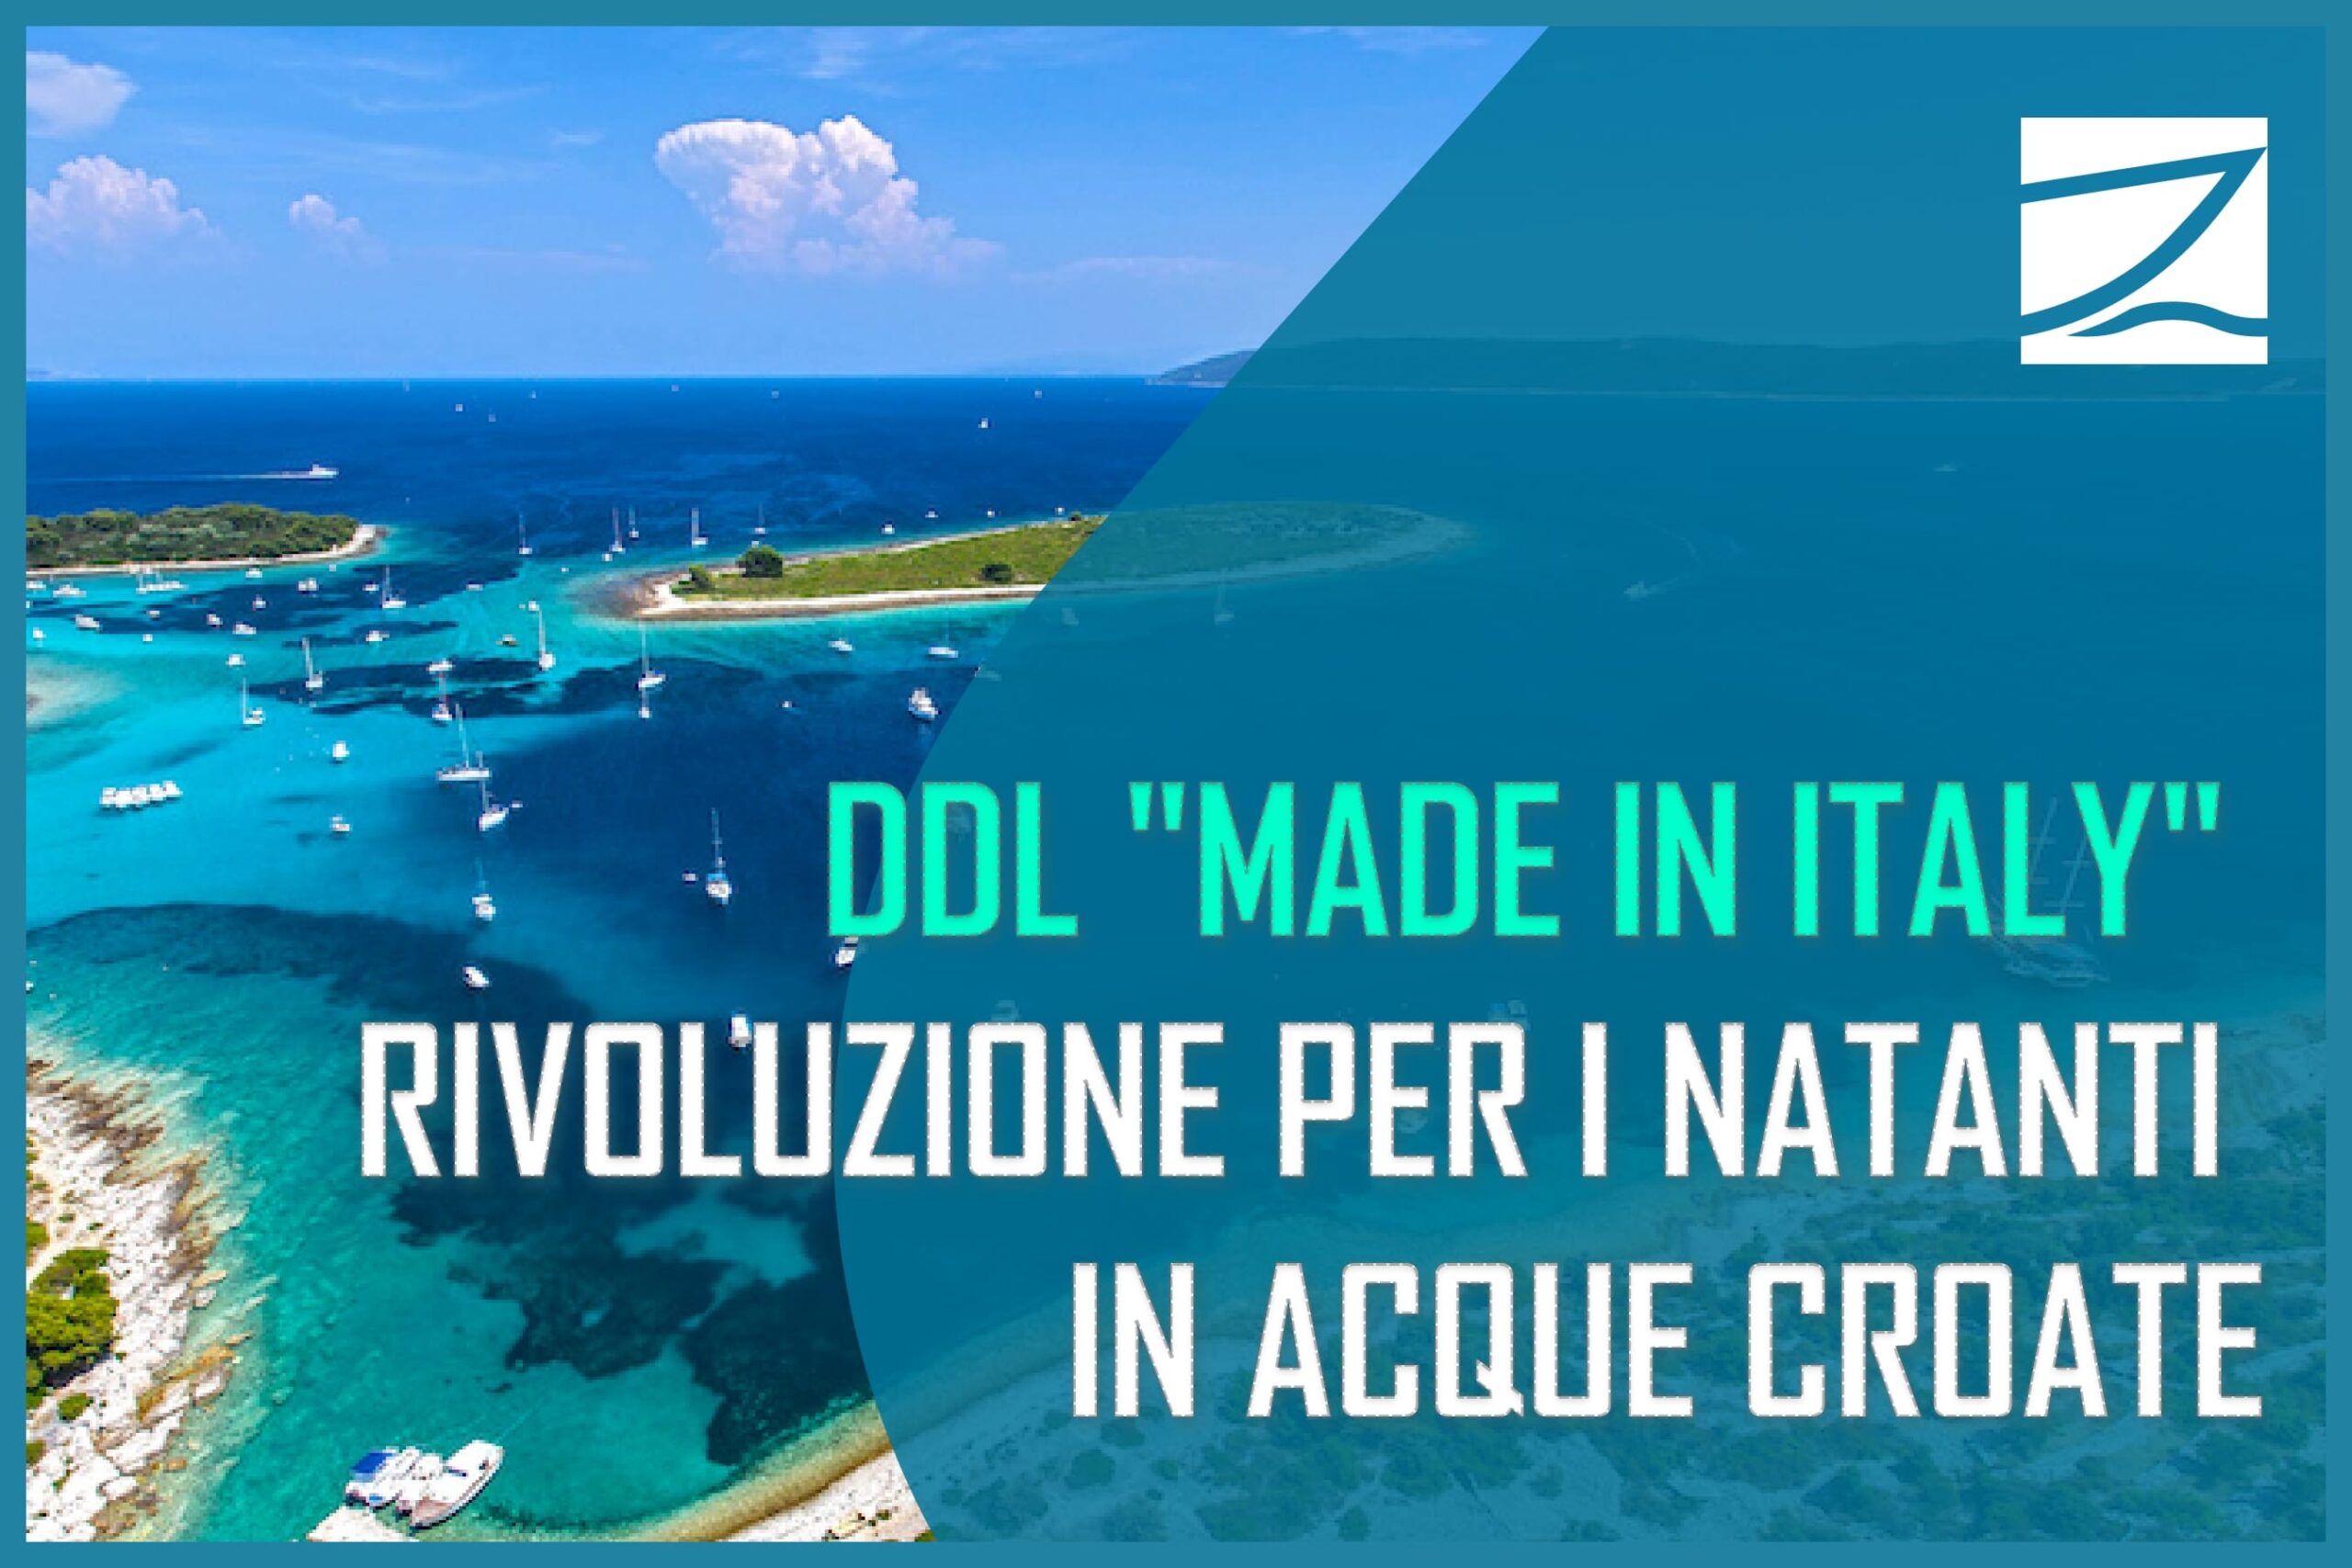 "DDL 'MADE IN ITALY' - Rivoluzione per i natanti in acque croate" sovrapposto a una vista aerea di imbarcazioni che navigano nelle acque cristalline croate, simbolo della nuova libertà di navigazione concessa dall'emendamento italiano.